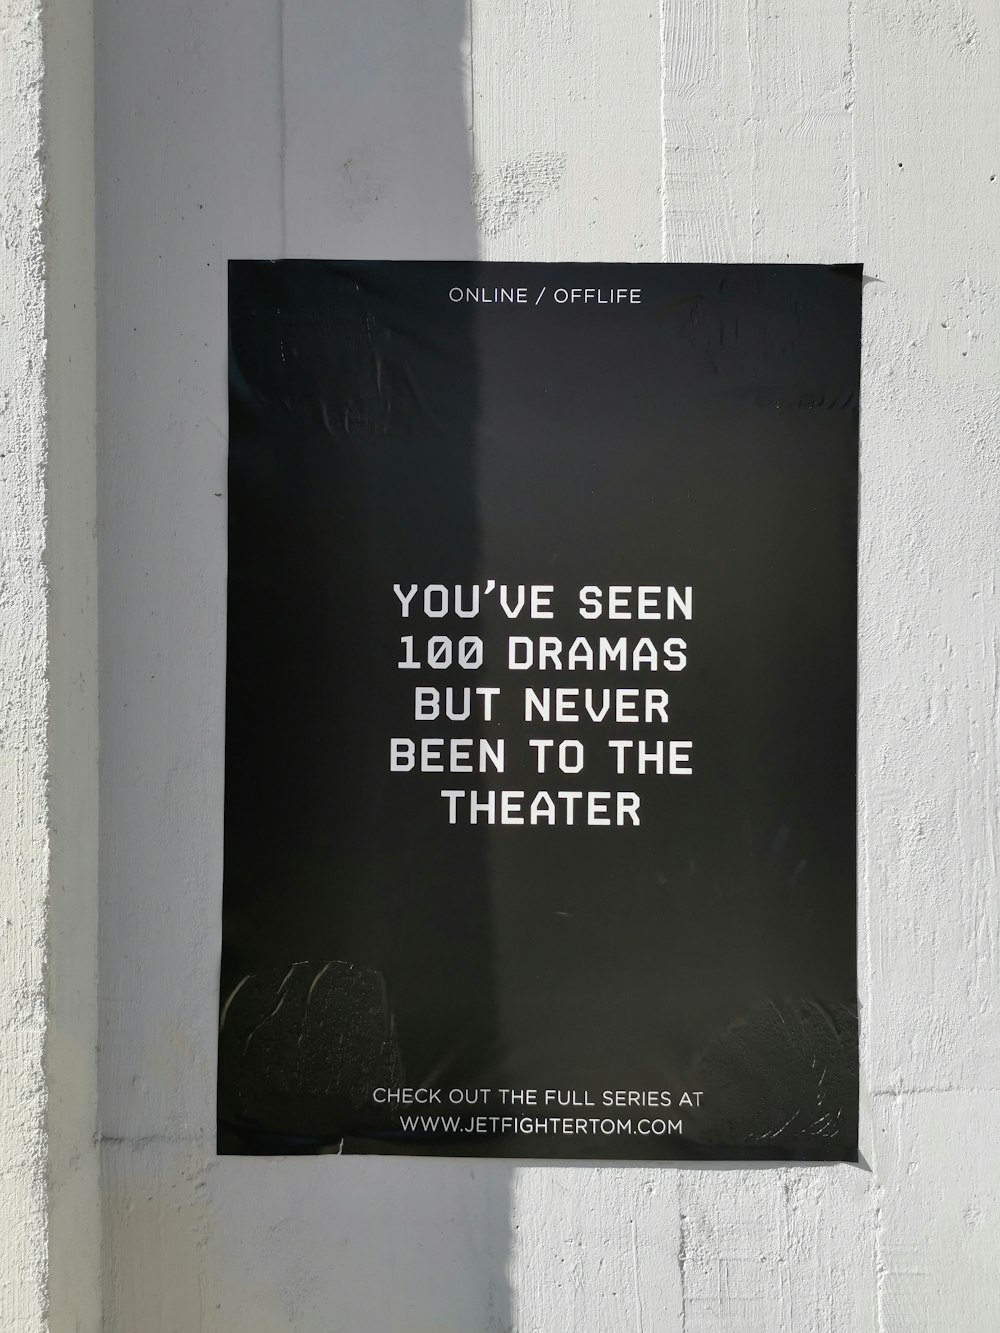 Du hast 100 Drams gesehen, warst aber noch nie auf dem Theaterplakat